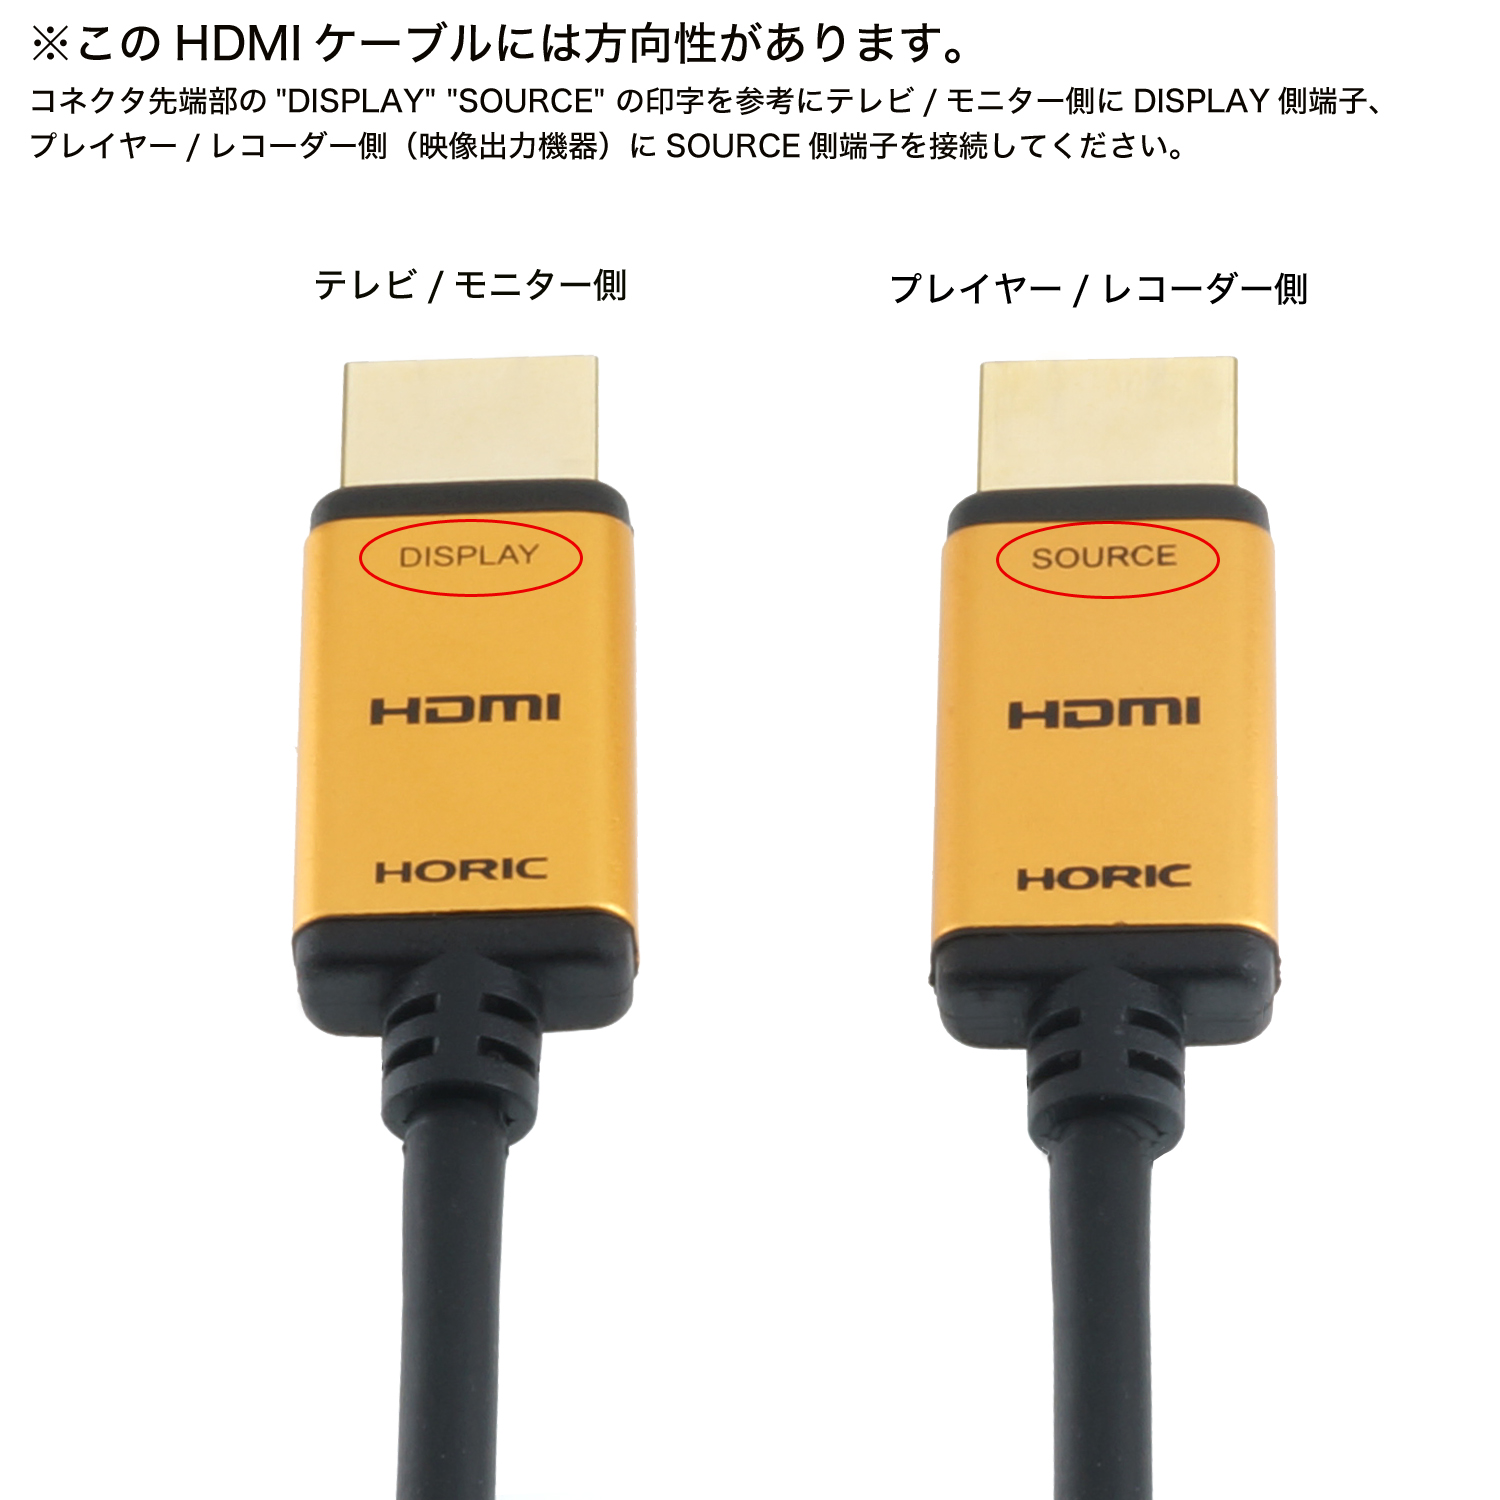 ラトックシステム HDMI光ファイバーケーブル 4K60Hz対応 (20m) RCL-HDAOC4K60-020 AVケーブル